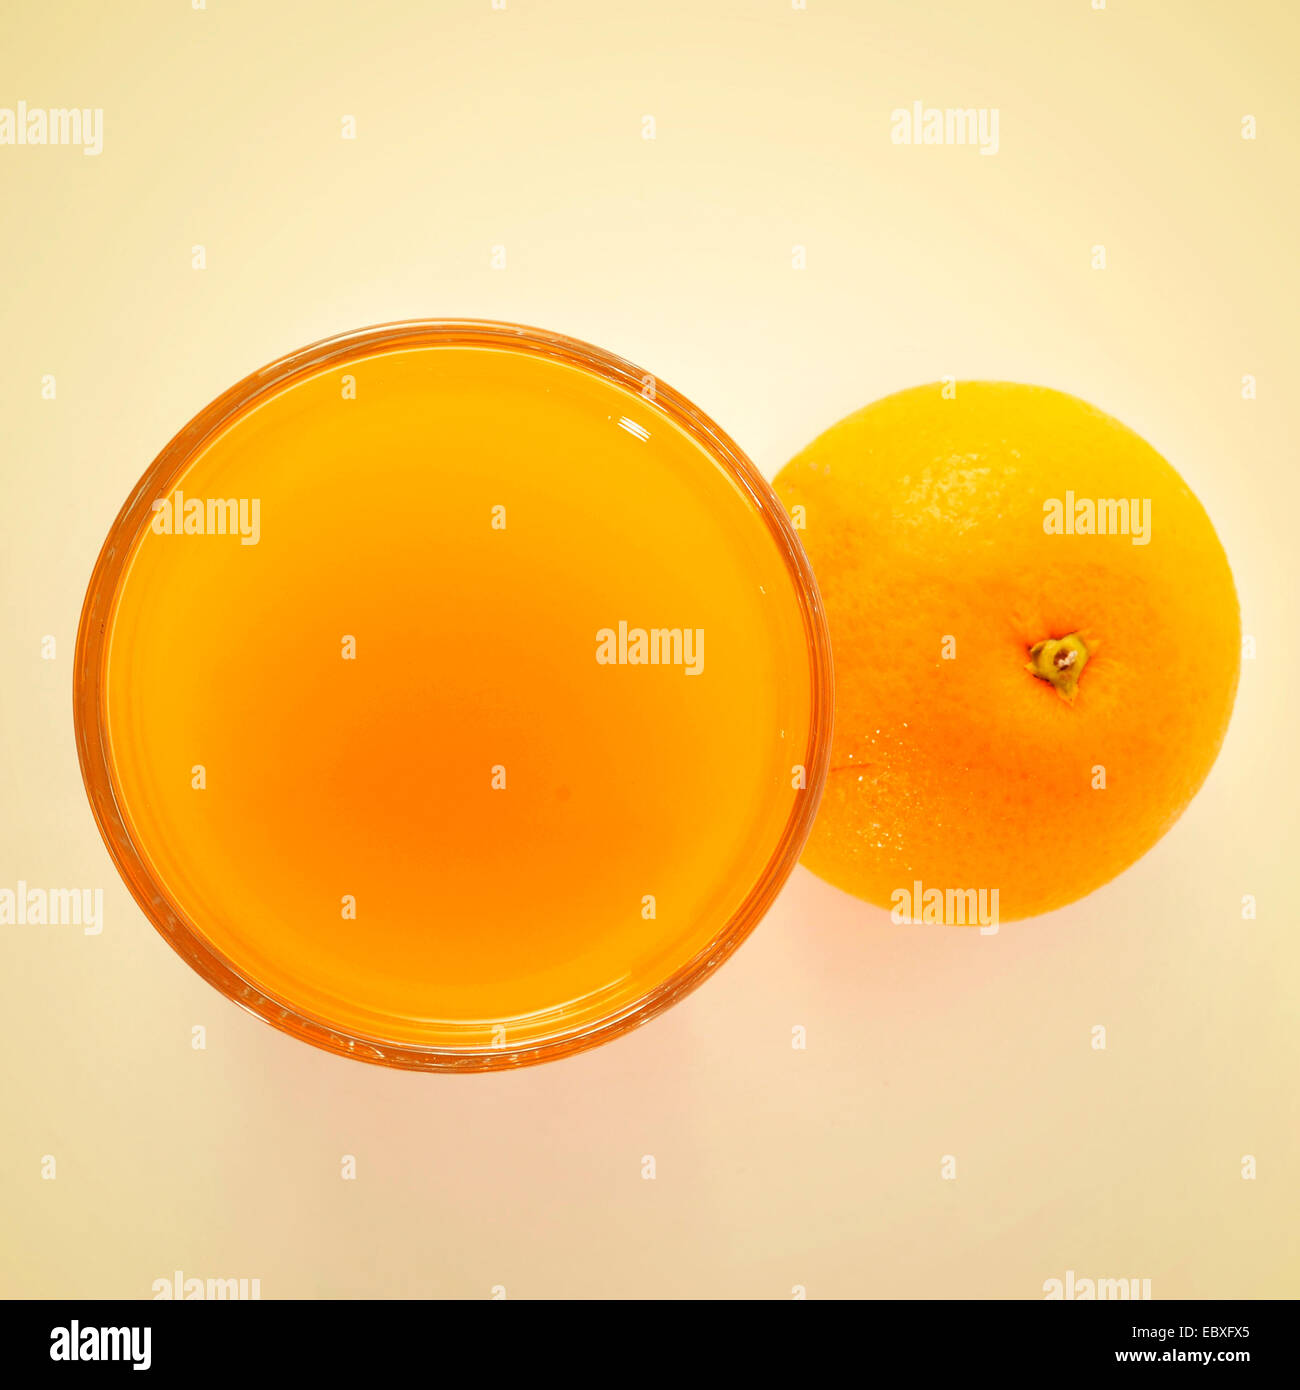 Immagine di un bicchiere di succo d'arancia appena spremuto, con un effetto retrò Foto Stock